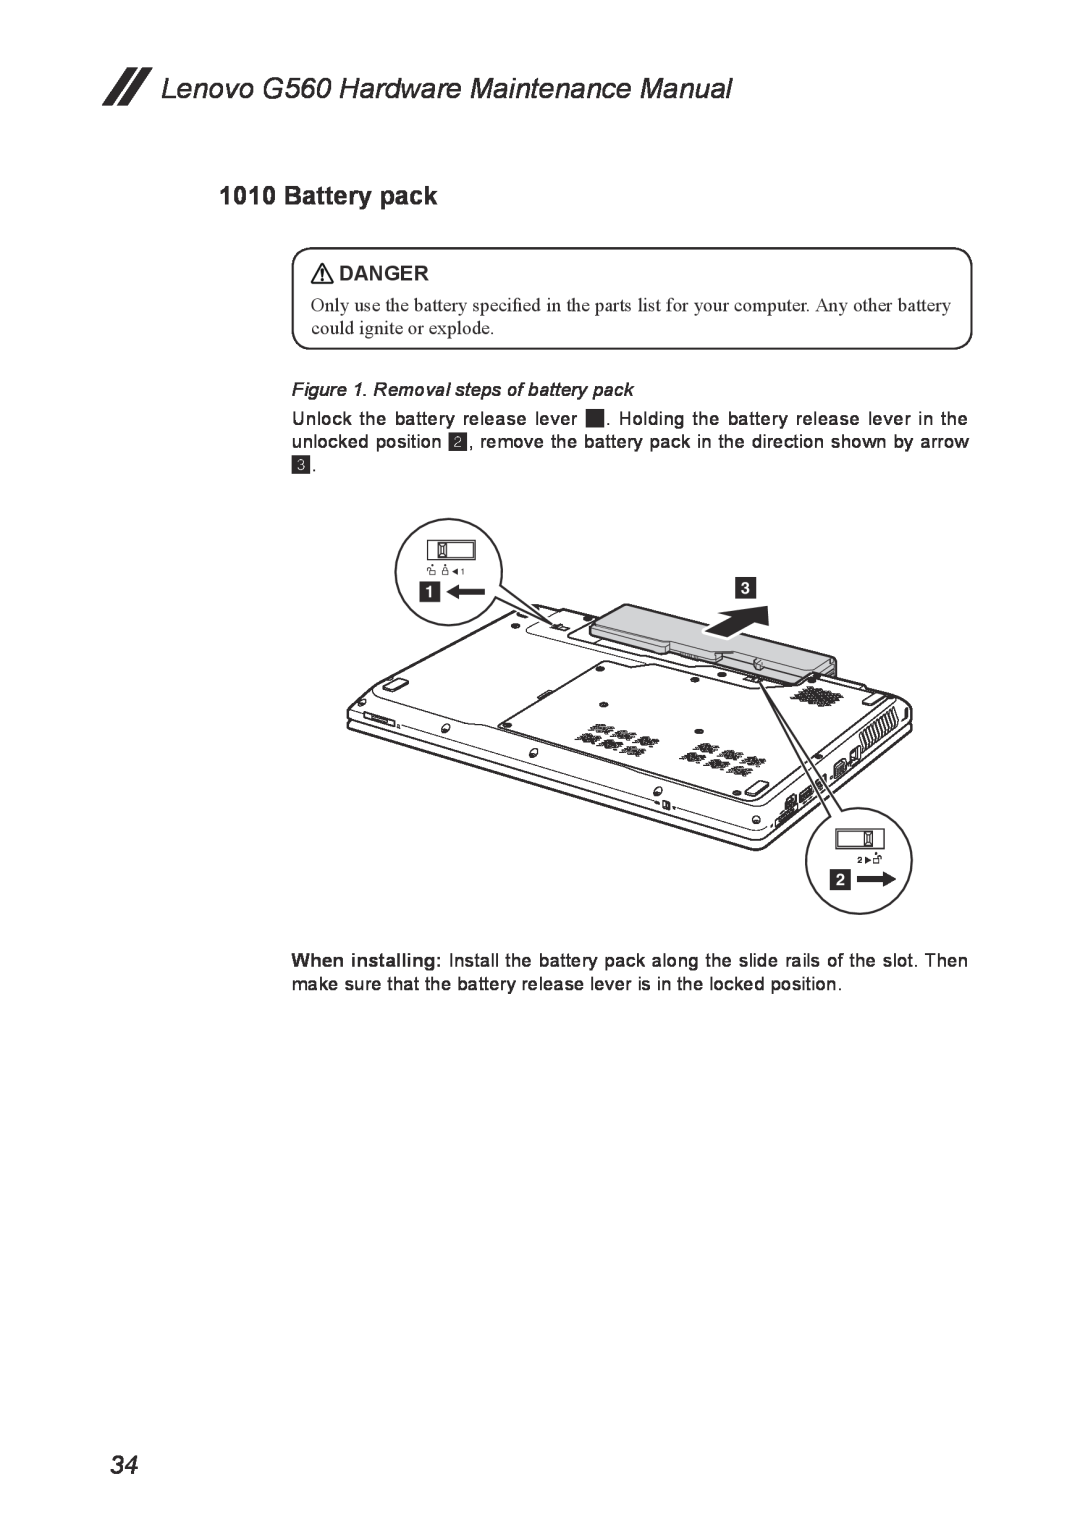 Lenovo manual Battery pack, Lenovo G560 Hardware Maintenance Manual, Danger, Removal steps of battery pack 